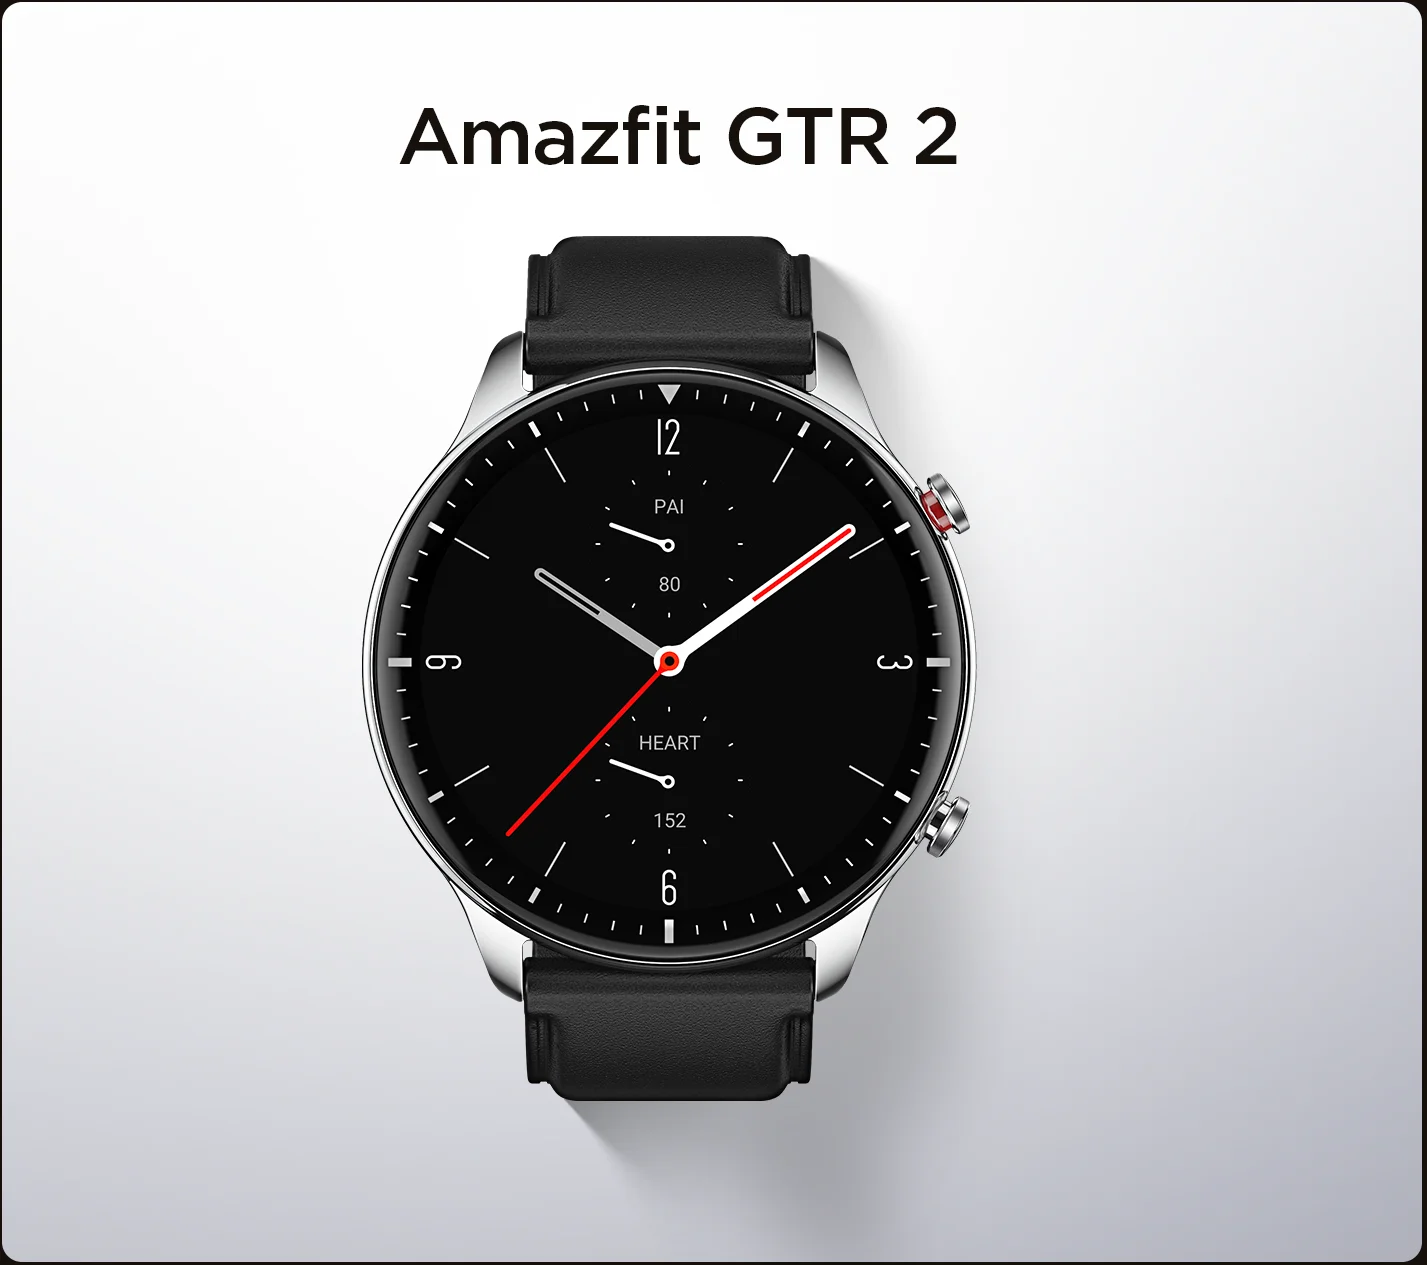  Глобальная версия Amazfit GTR 2 Smartwatch Магнитная Зарядка 14 день Батарея 90 спортивных режимов 5ATM Водонепроницаемый IOS Android доступны 